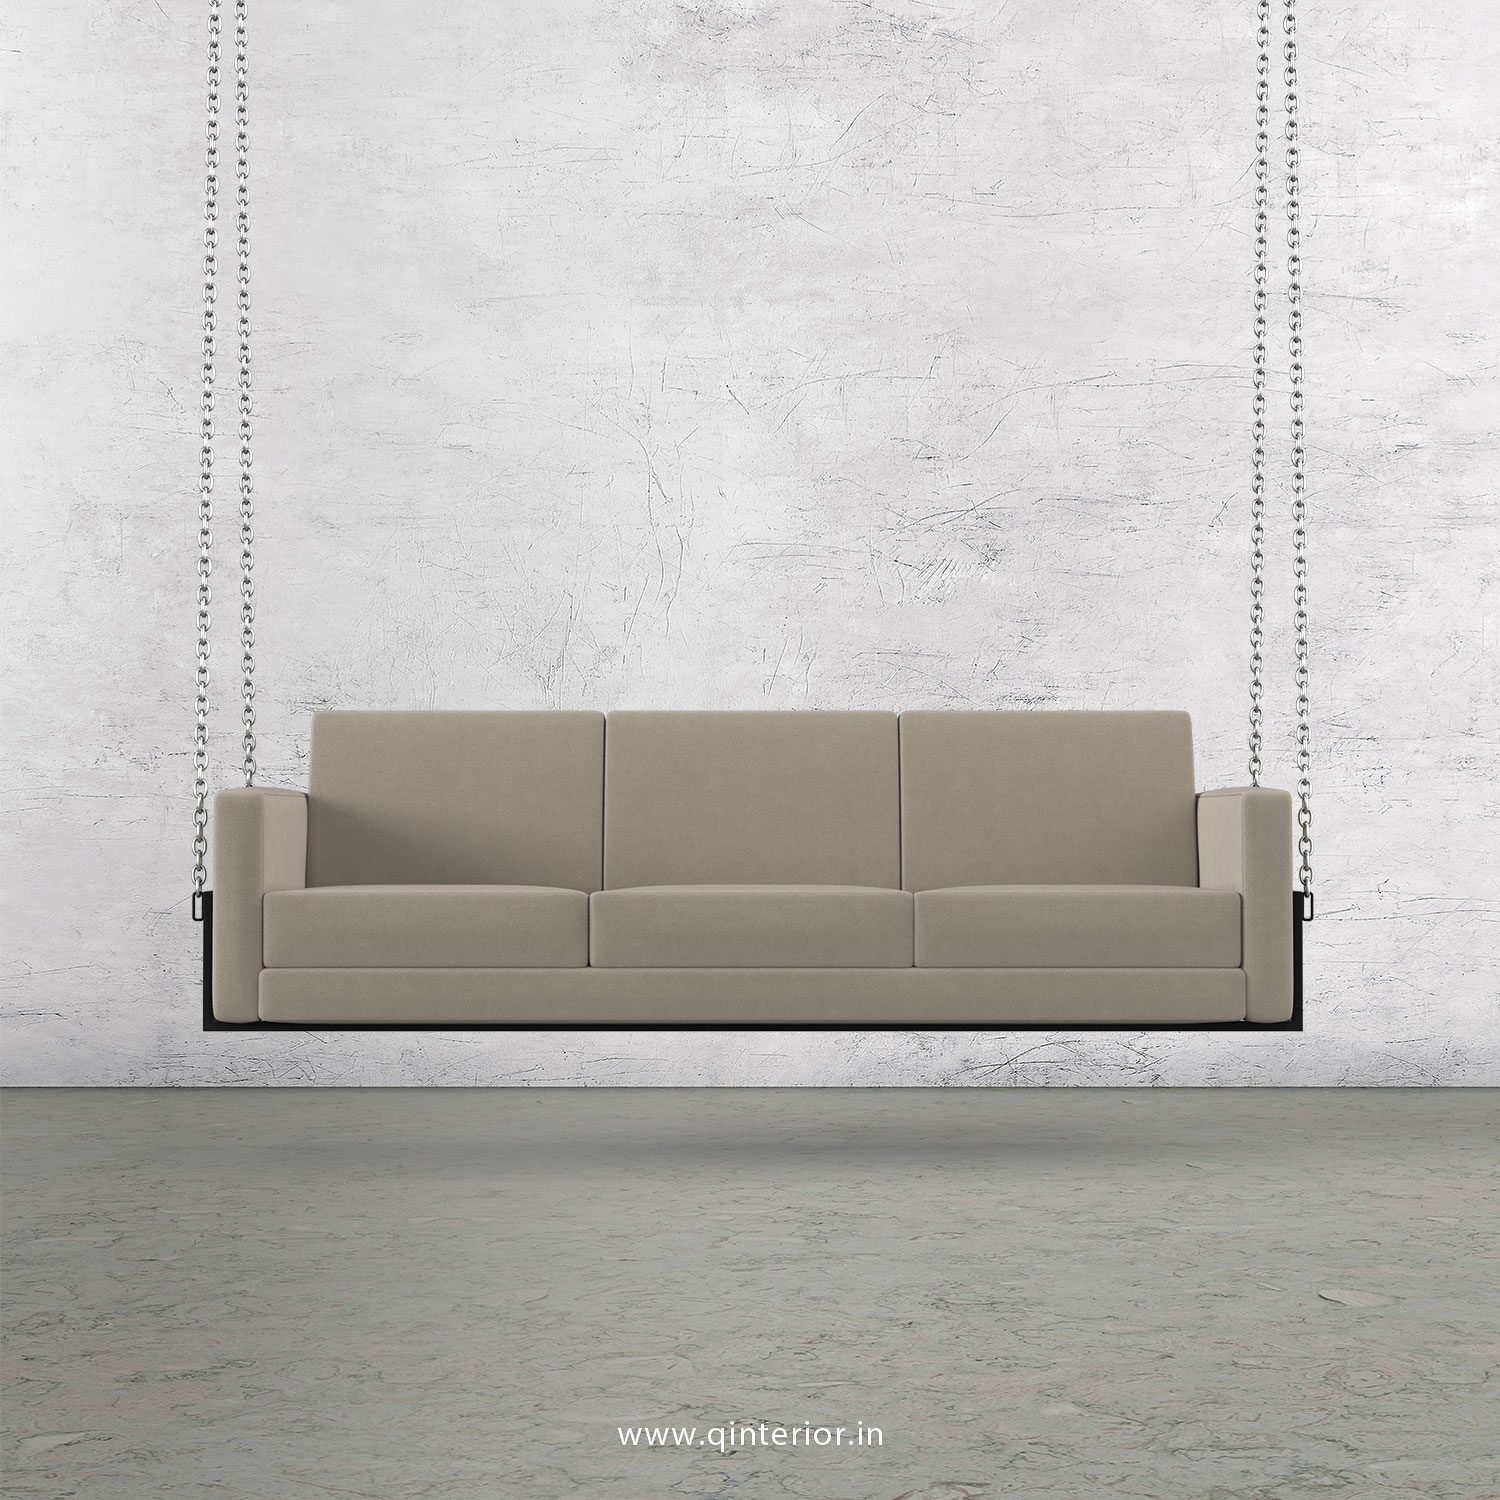 NIRVANA 3 Seater Swing Sofa in Velvet Fabric - SSF001 VL01